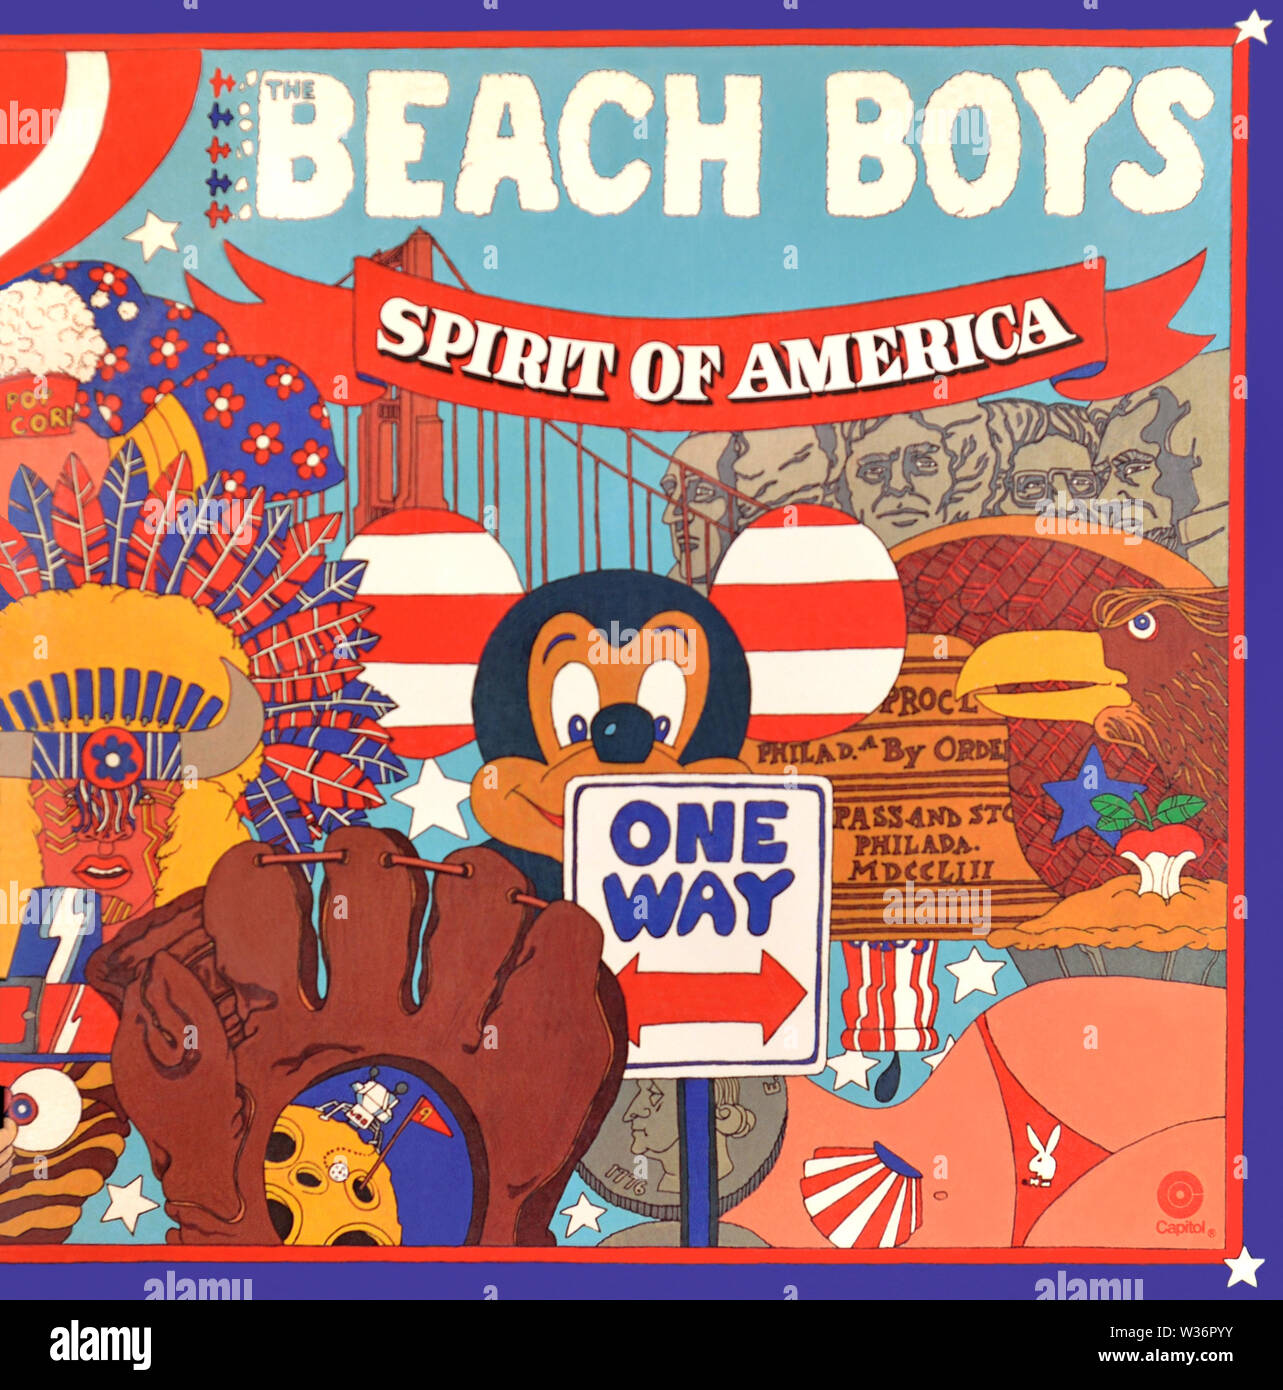 The Beach Boys - couverture originale de l'album en vinyle - Spirit of America - 1975 Banque D'Images